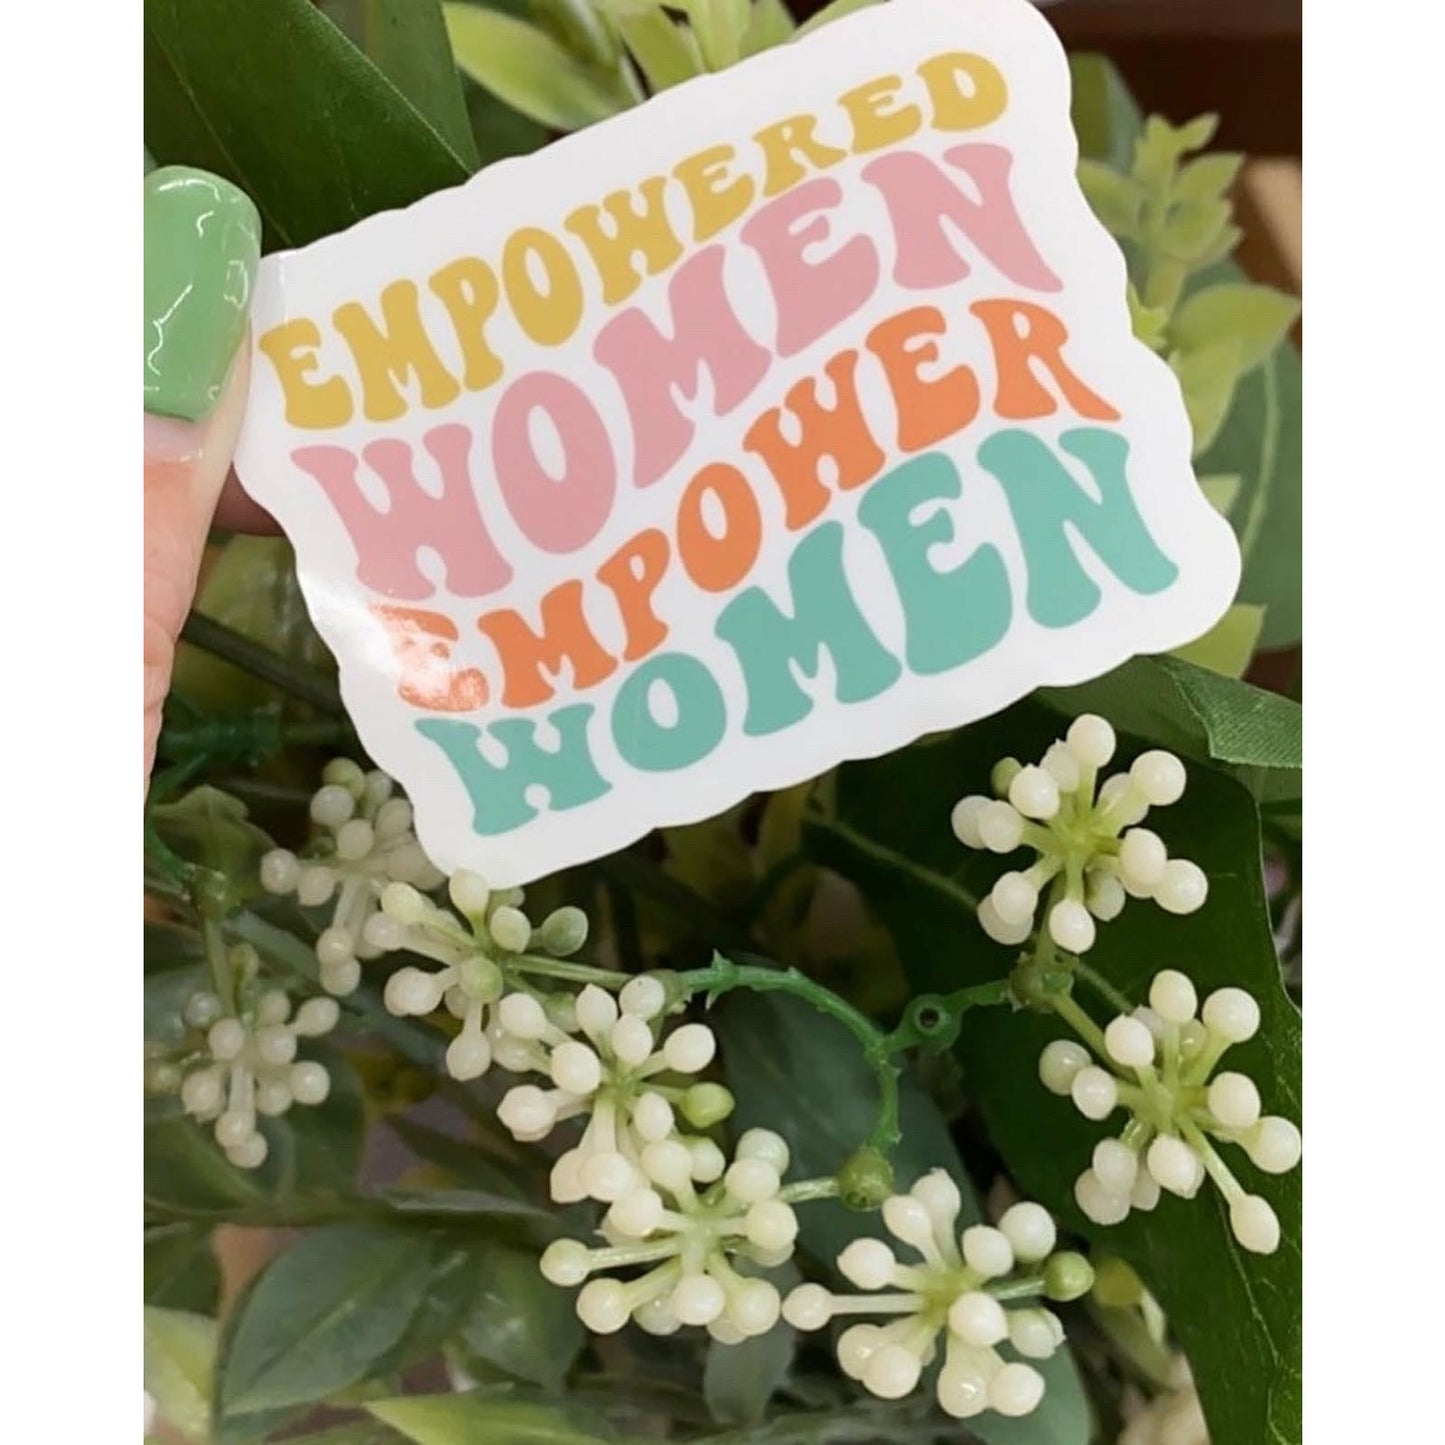 Empowered Women Small Sticker